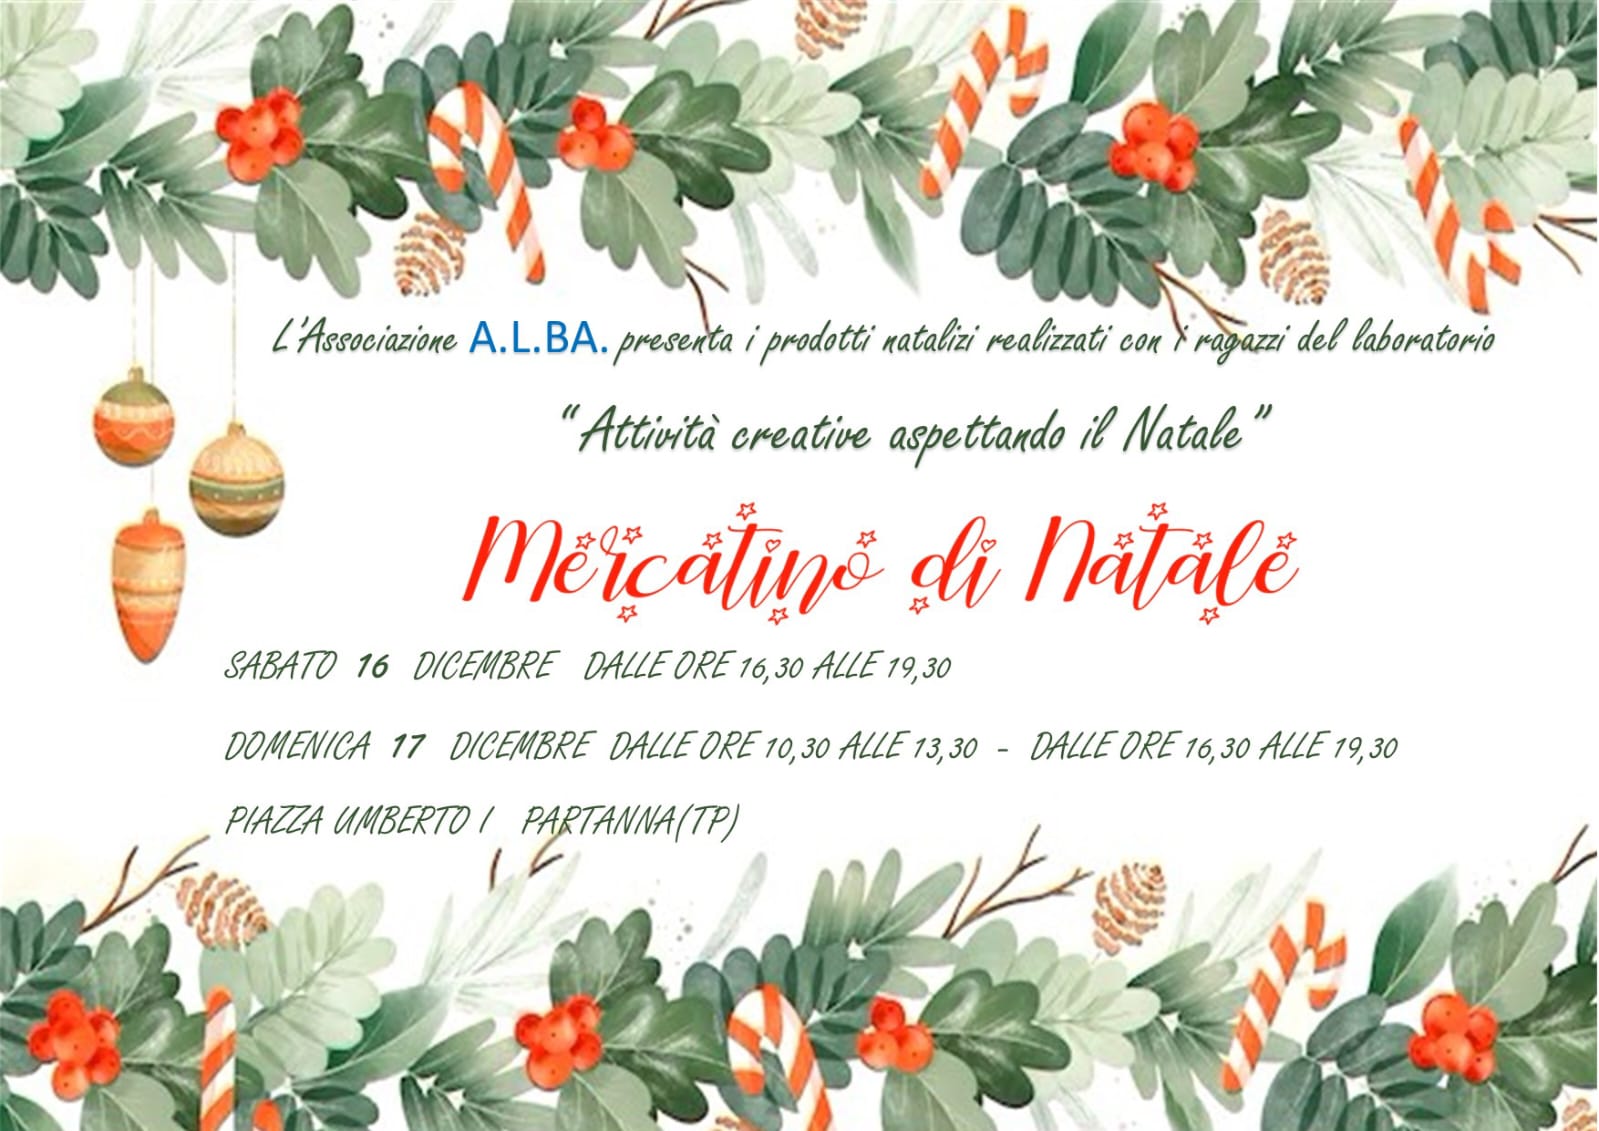 L’Associazione culturale “Alba”presenta i prodotti natalizi nel “Mercatino di Natale”